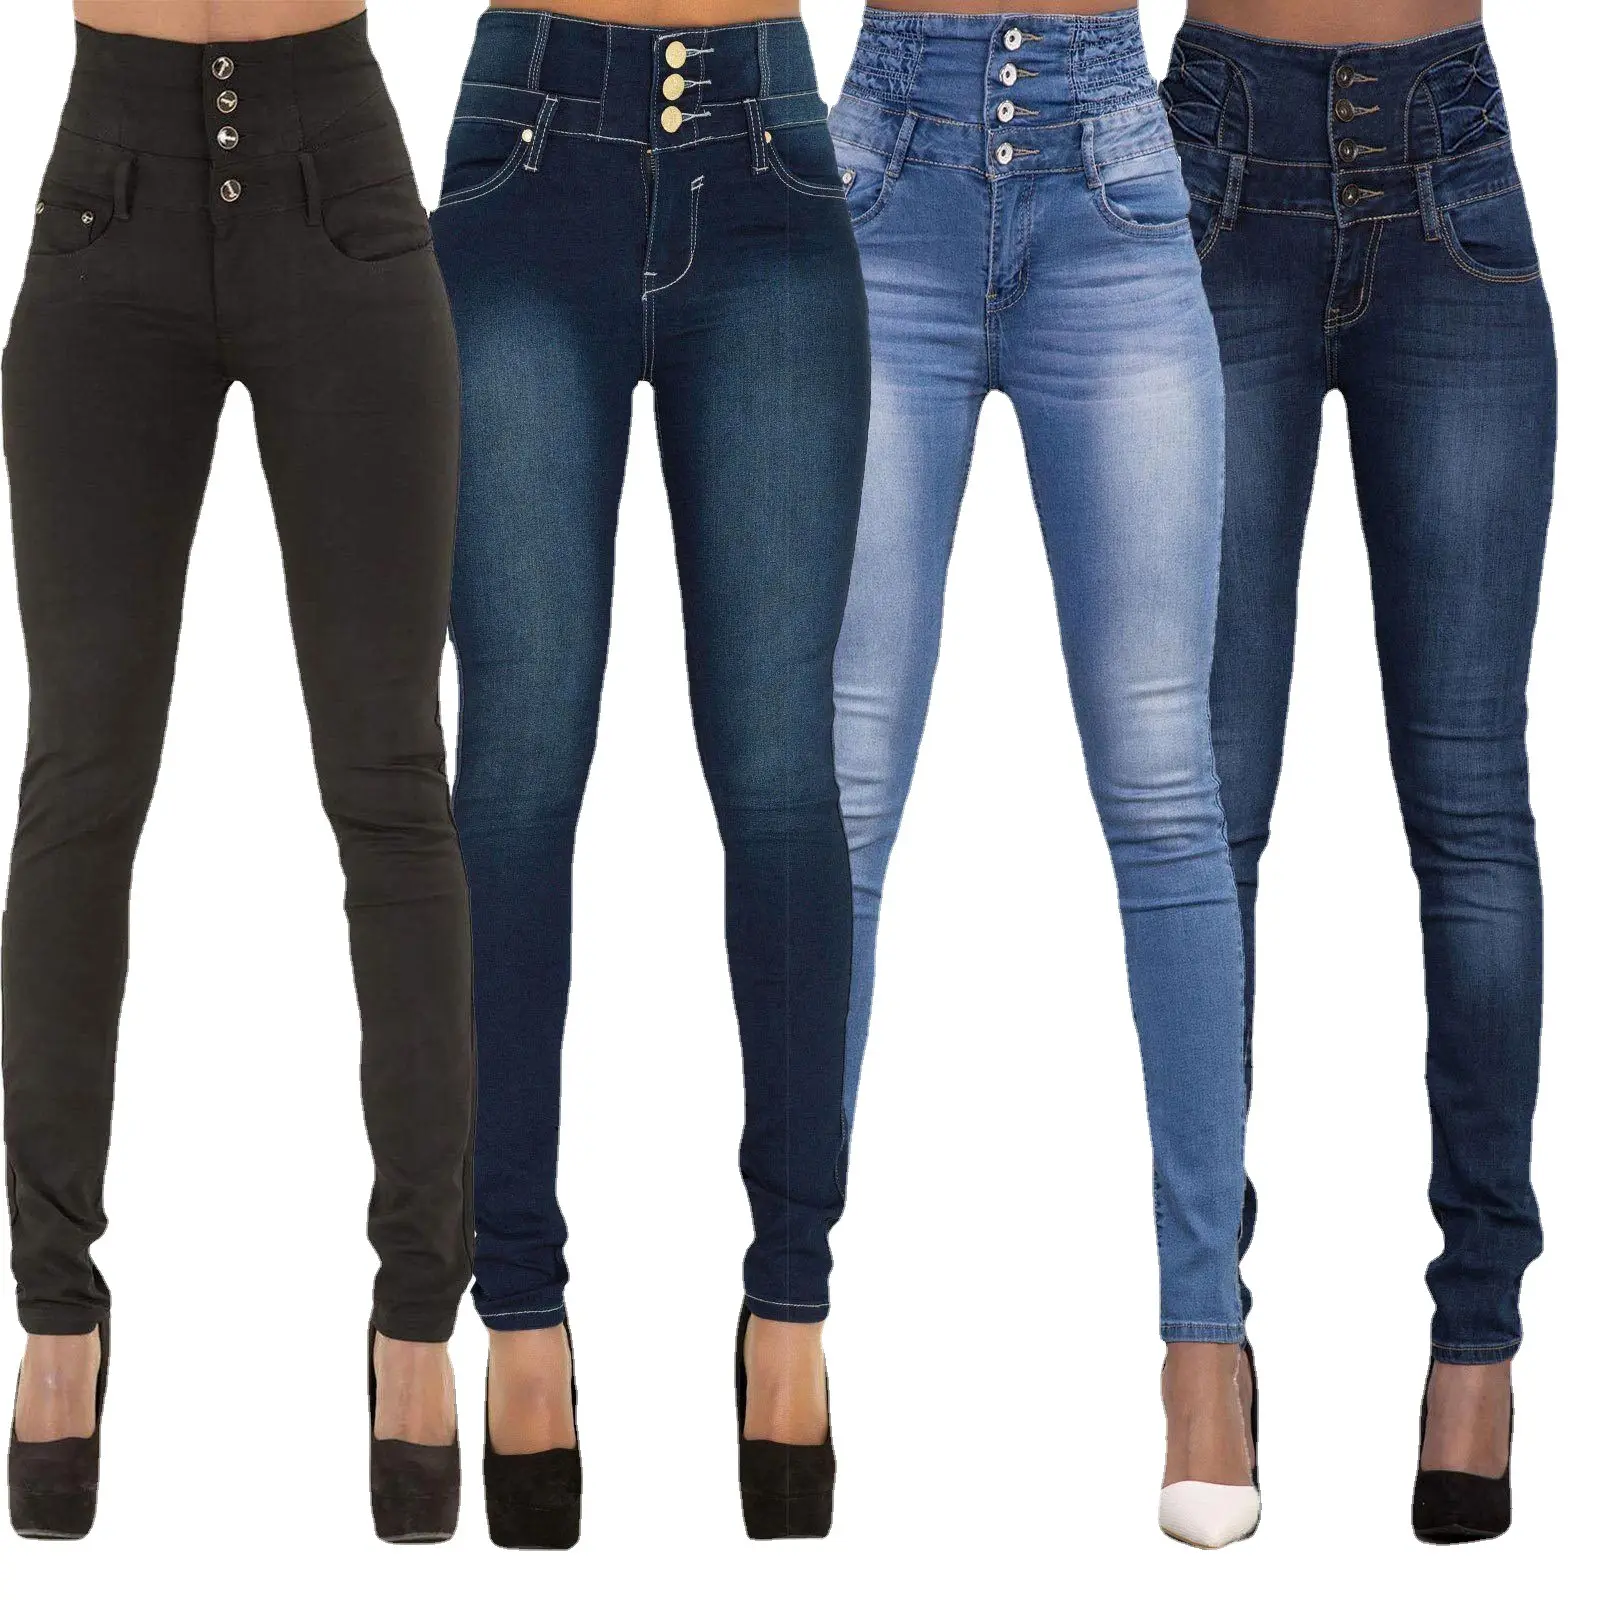 Groothandel Populaire Mode Zwart Skinny Hole Gescheurde Denim Colombian Jeans Elastische Broek Broek Dames Grote Maat Jeans